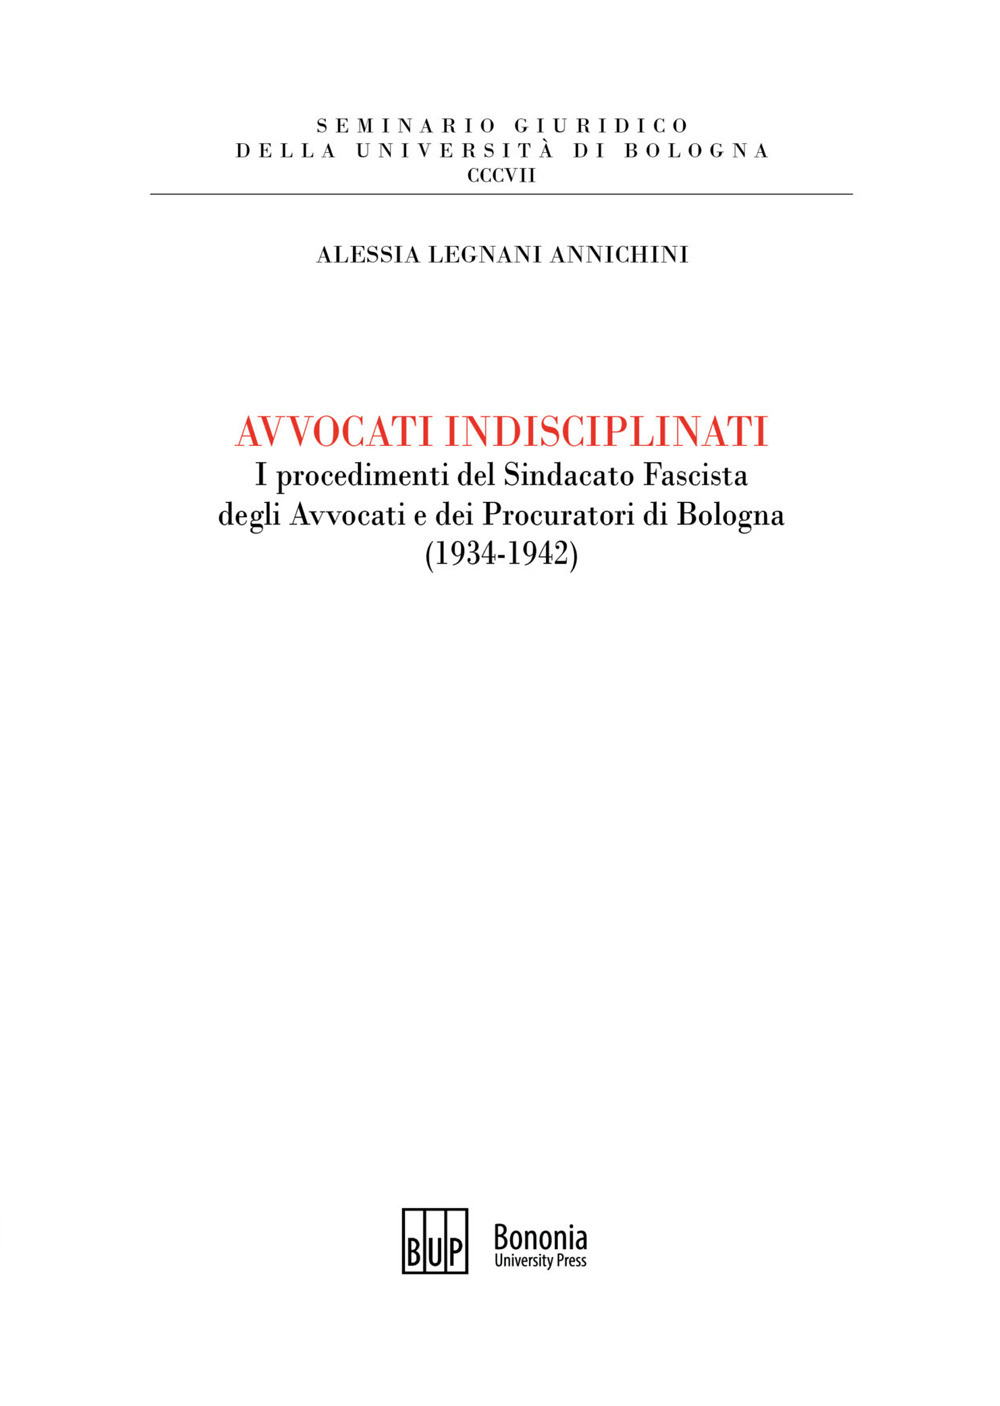 Avvocati indisciplinati. I procedimenti del Sindacato Fascista degli Avvocati e dei Procuratori di Bologna (1934-1942)